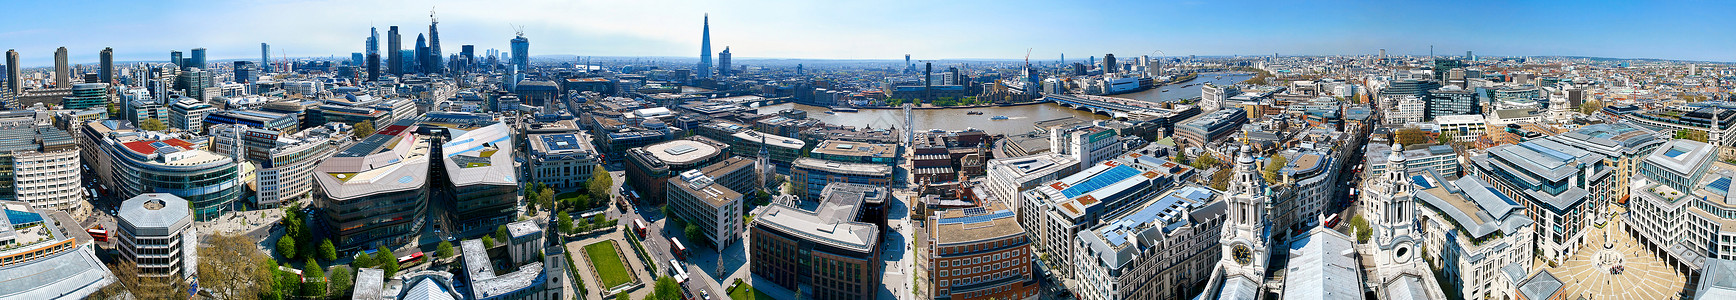 宝珠办公室伦敦360来自圣保罗的全景观街道图片